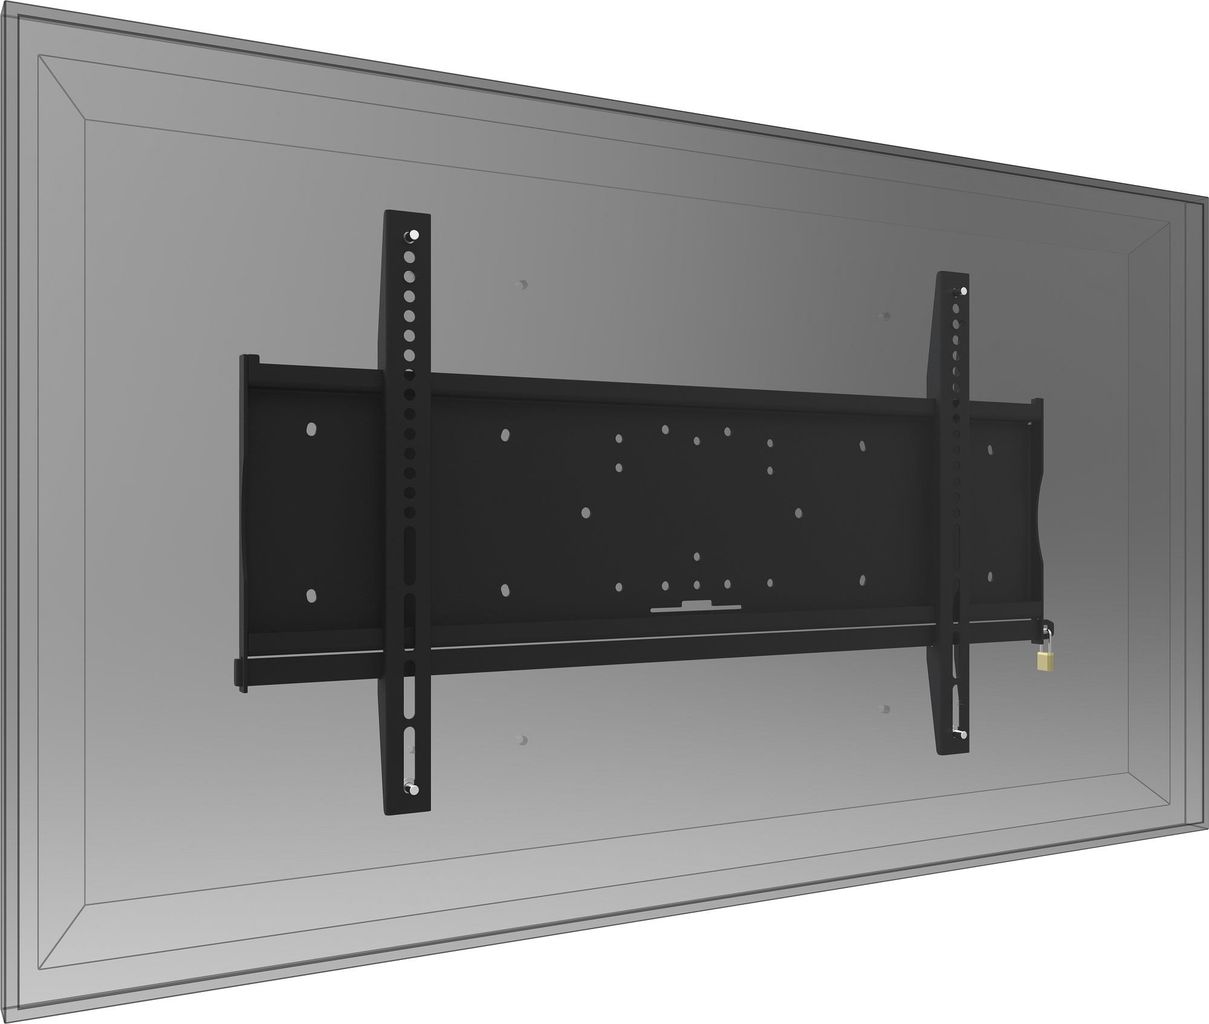 Iiyama - Wandhalterung für LCD-/Plasmafernseher (MD 052B2000)